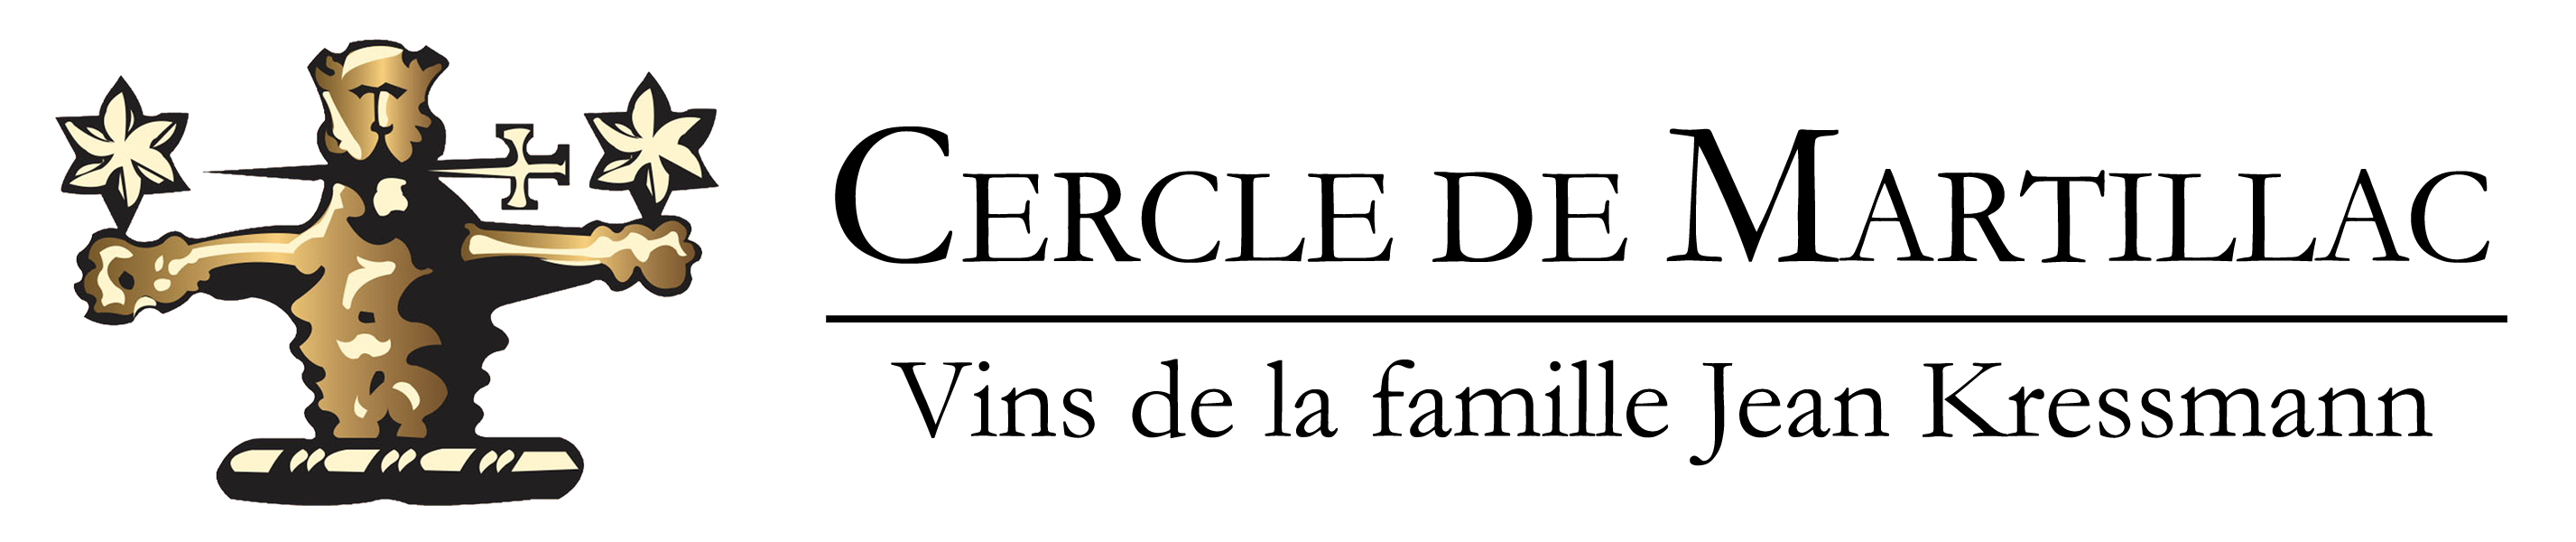 Cercle de Martillac logo